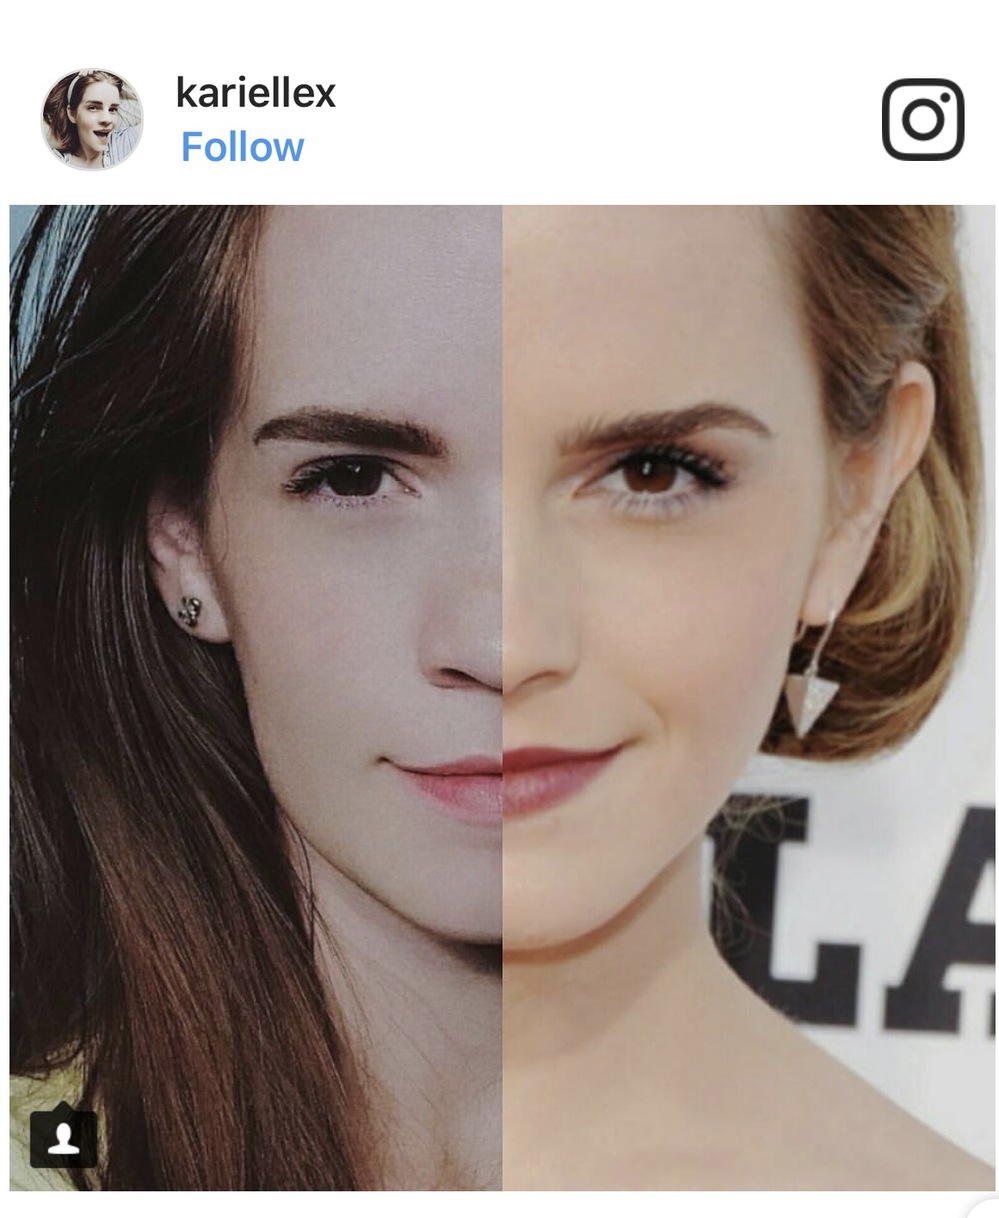  
Bức hình so sánh với Emma Watson được Kari Lewis đăng tải.